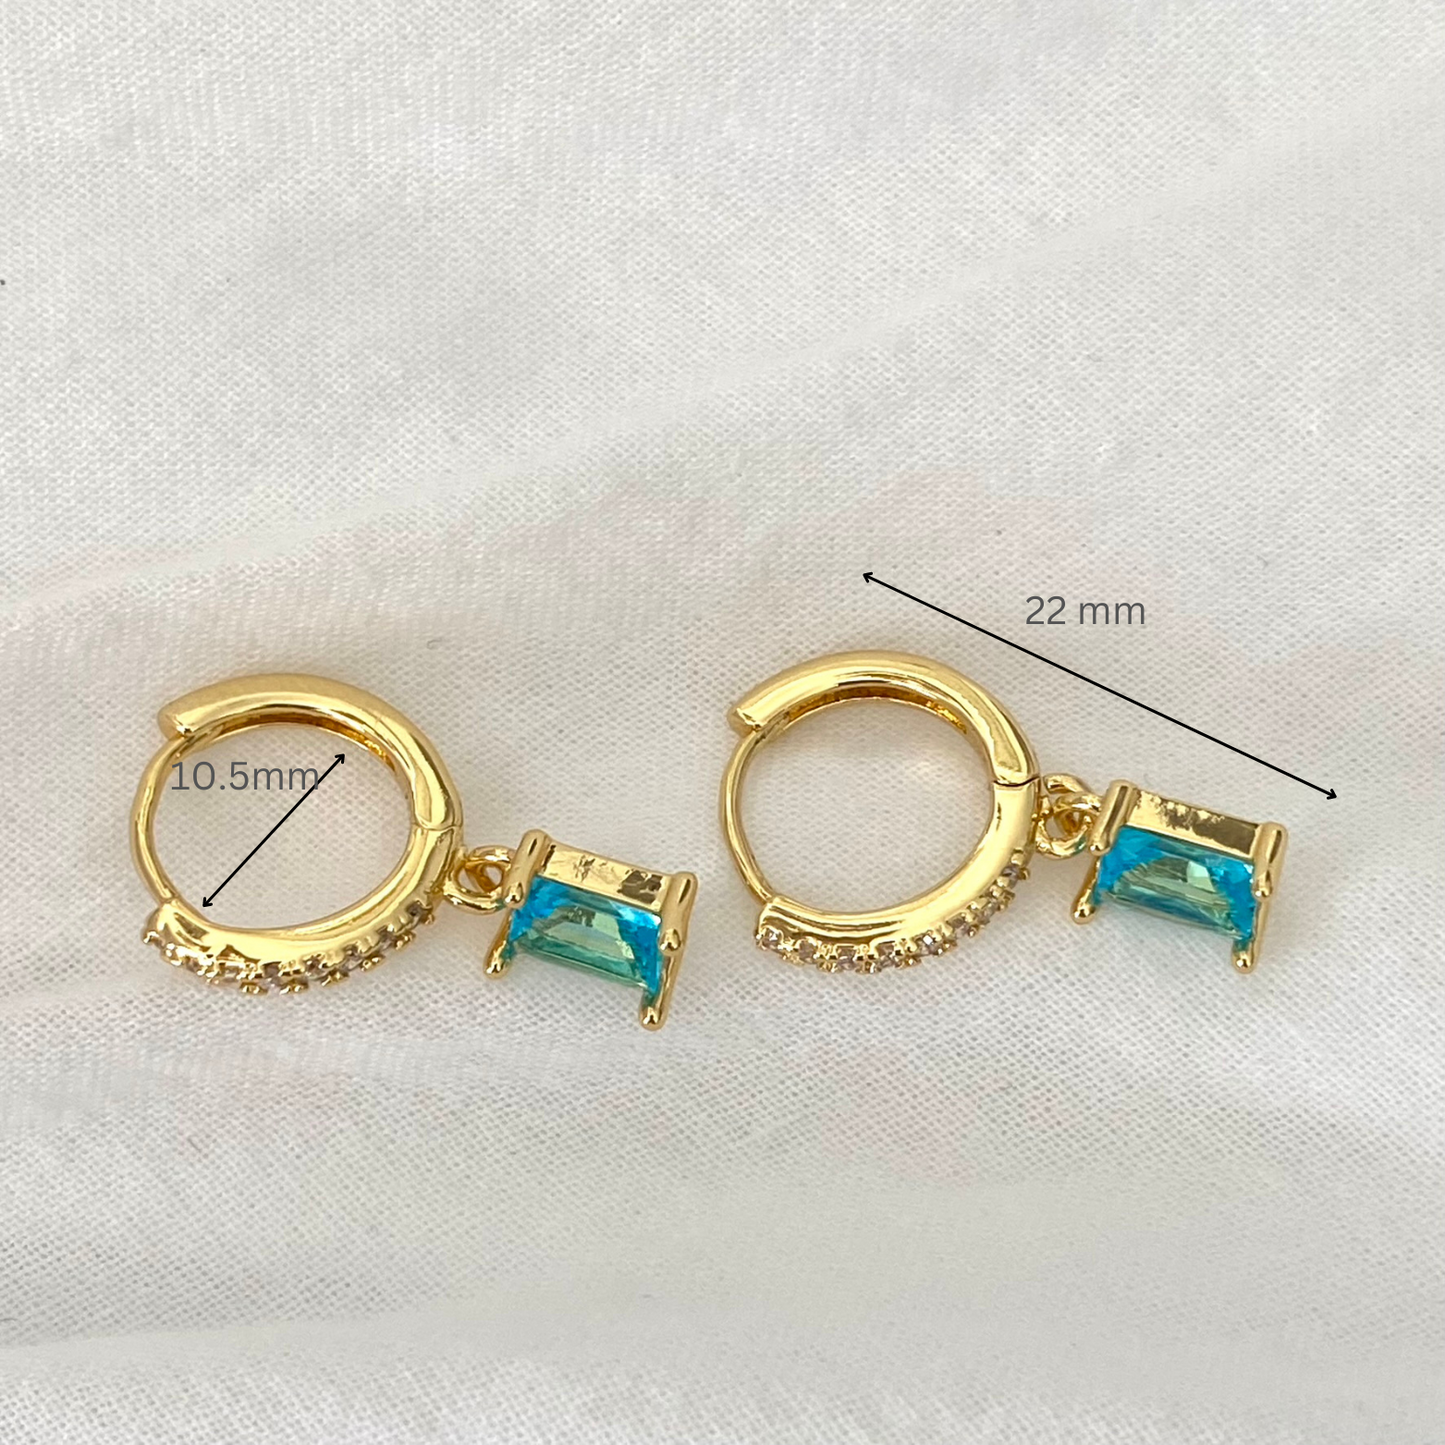 Baguette Dangle Earrings, Minimalist Gold Cubic Drop Earrings, Emerald dangle hoops, Pink Earrings, Square Cubic Drop Earrings